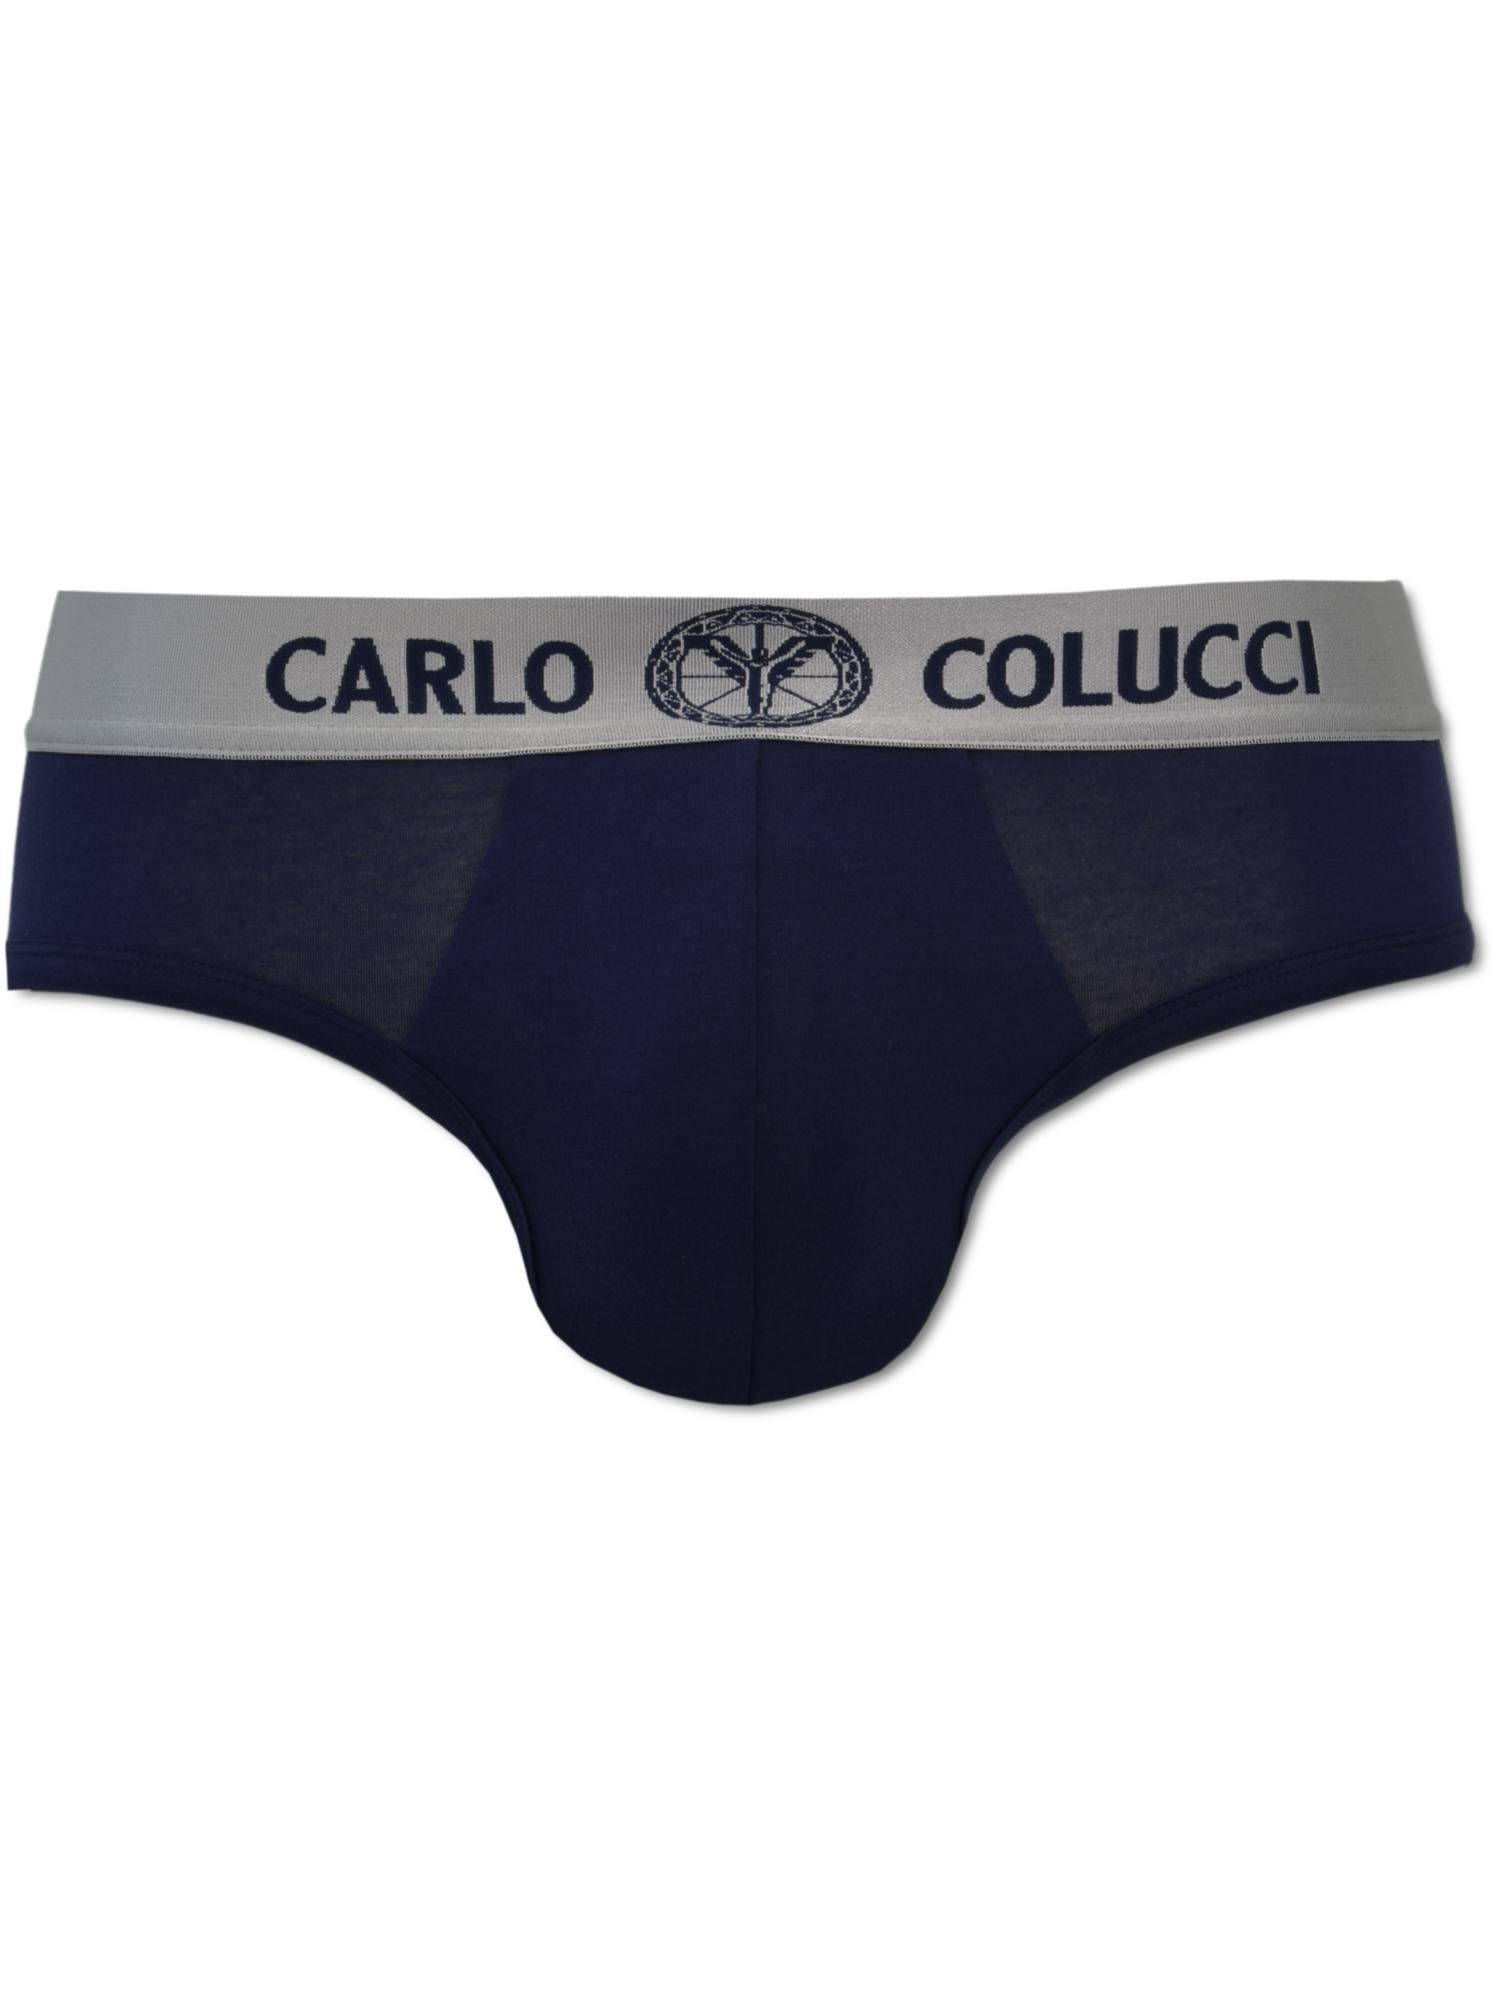 COLUCCI Slip Cavaggion CARLO Navy